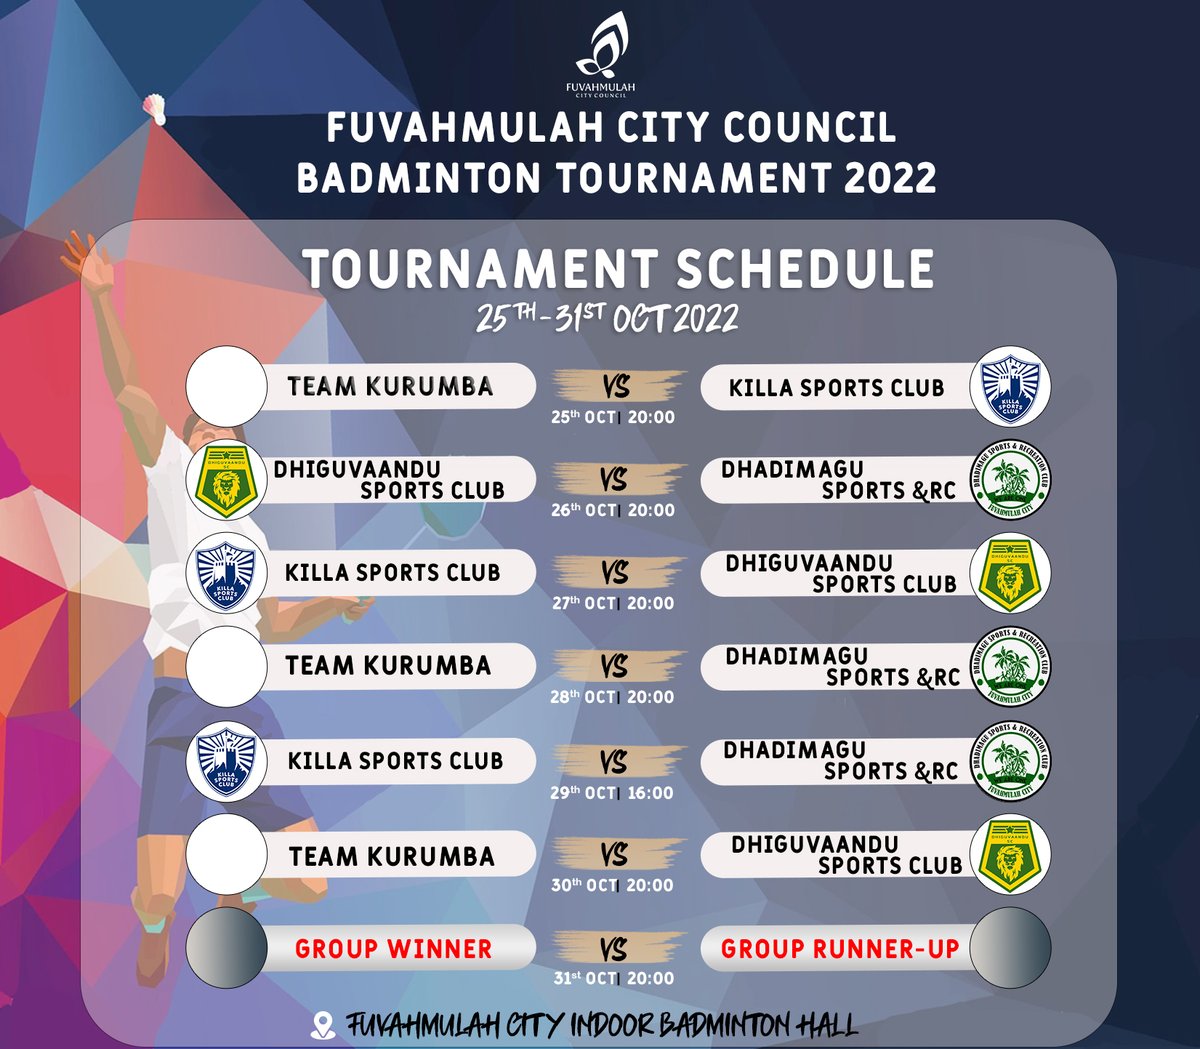 Fuvahmulah City Council Badminton Tournament 2022 Schedule